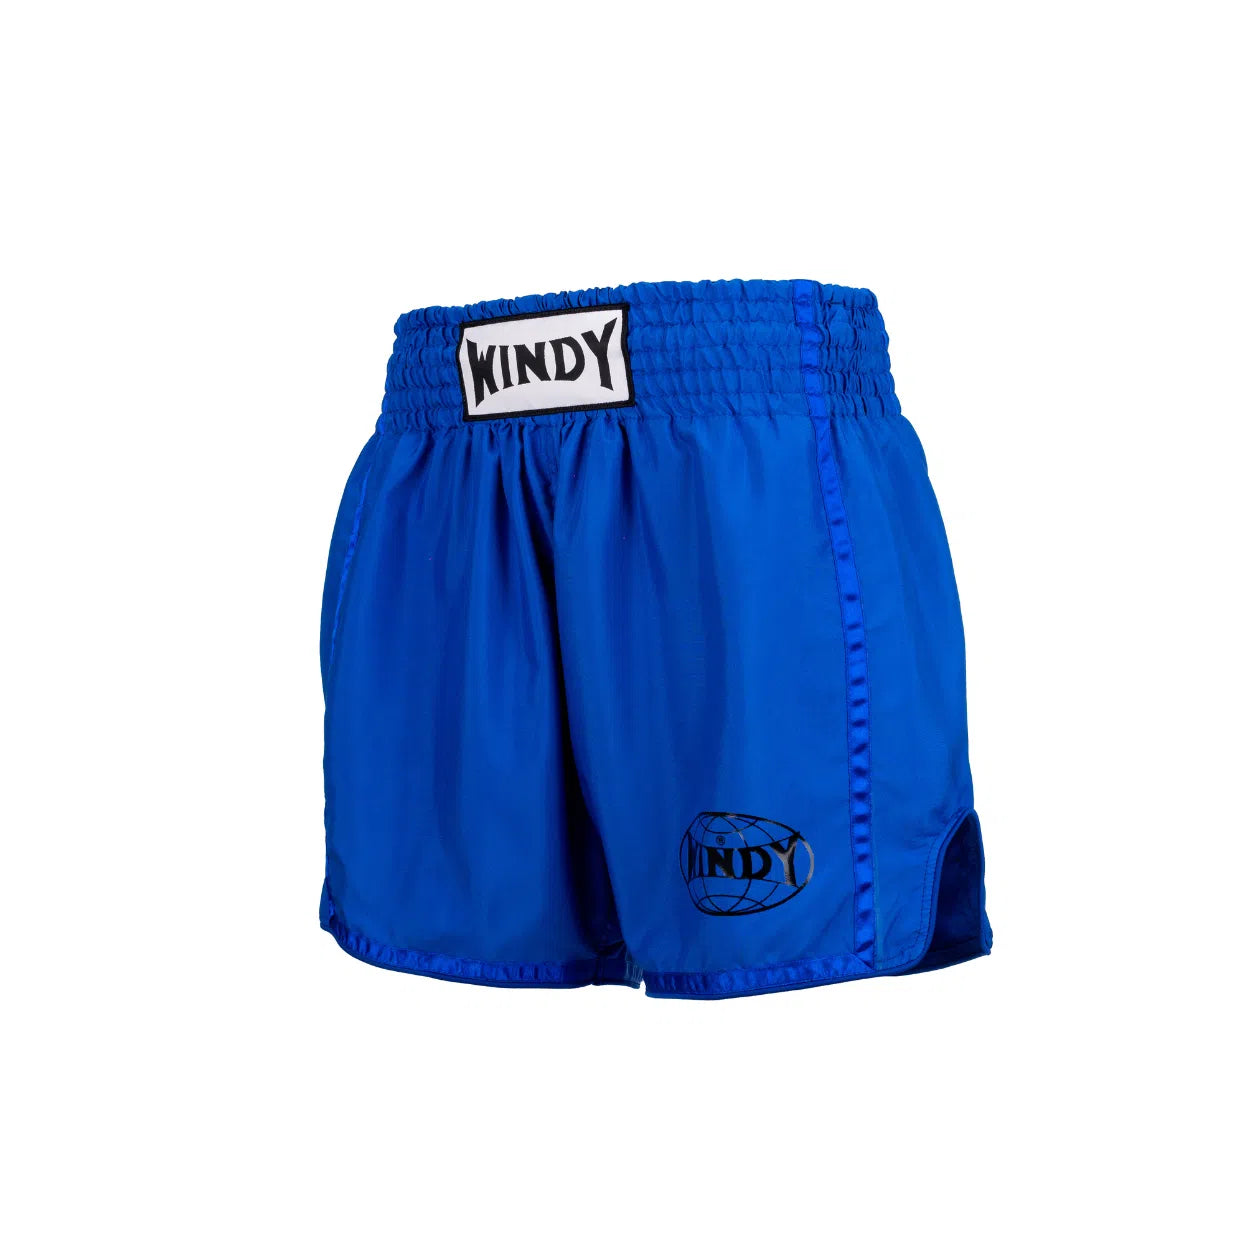 Muay Thai Shorts - Blue